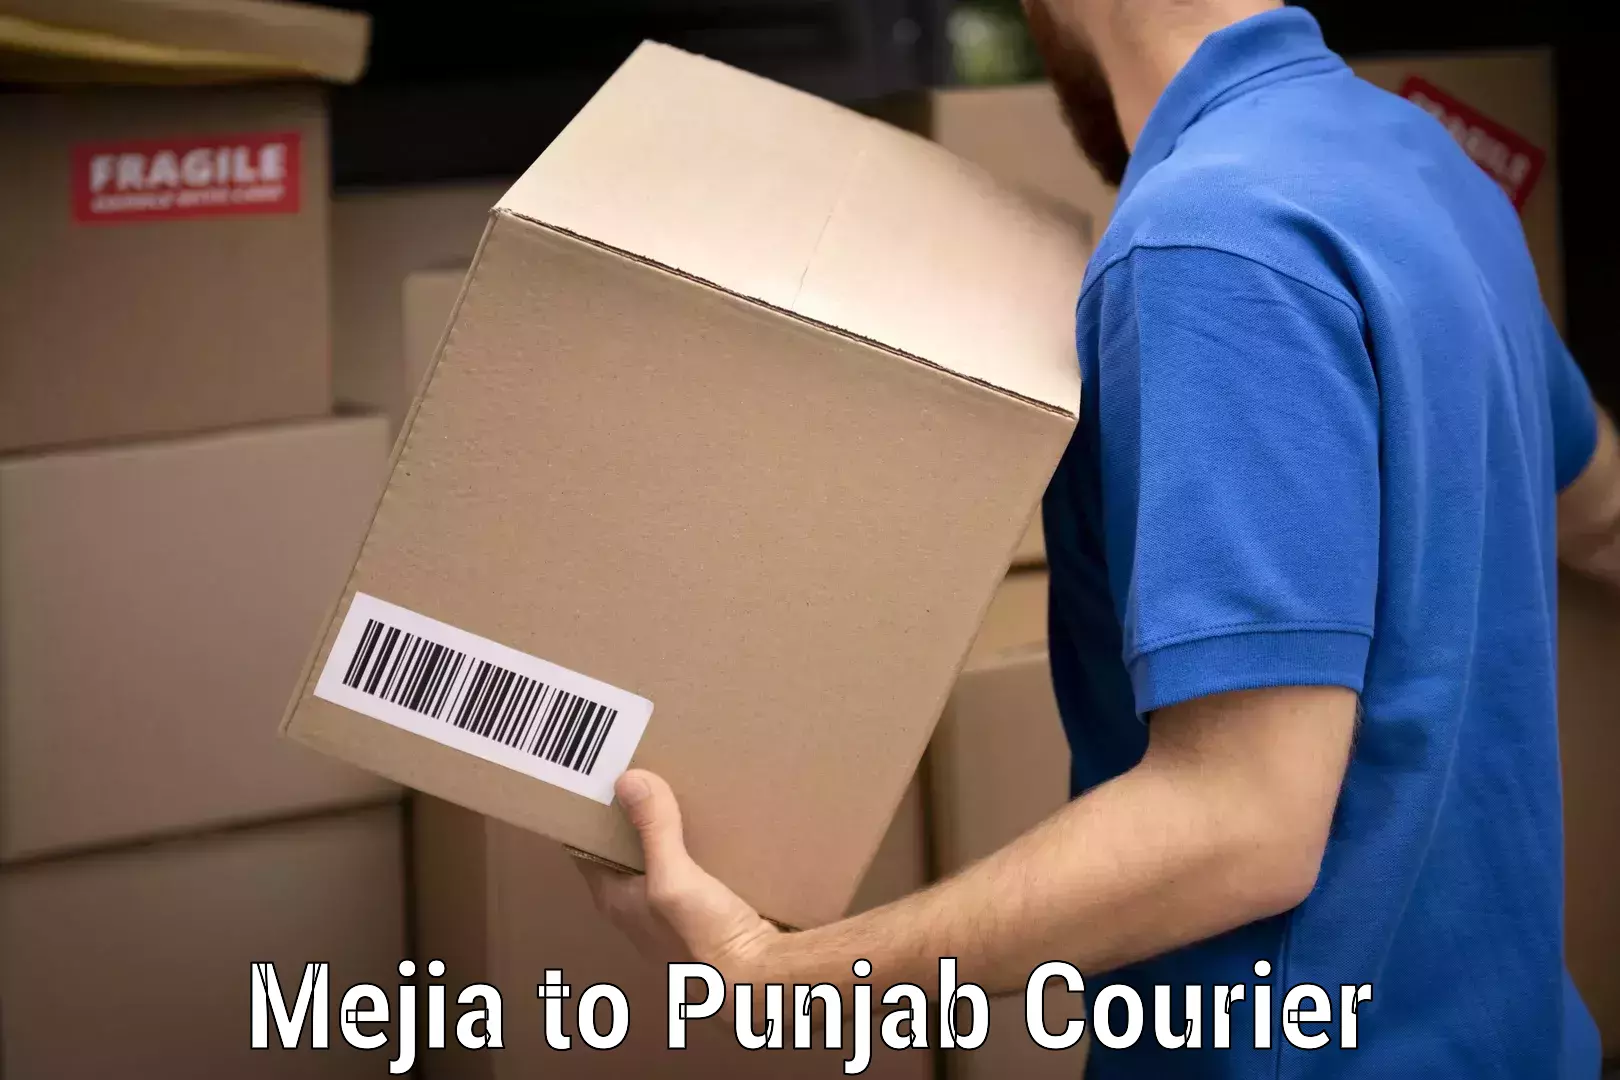 Furniture transport professionals Mejia to Punjab